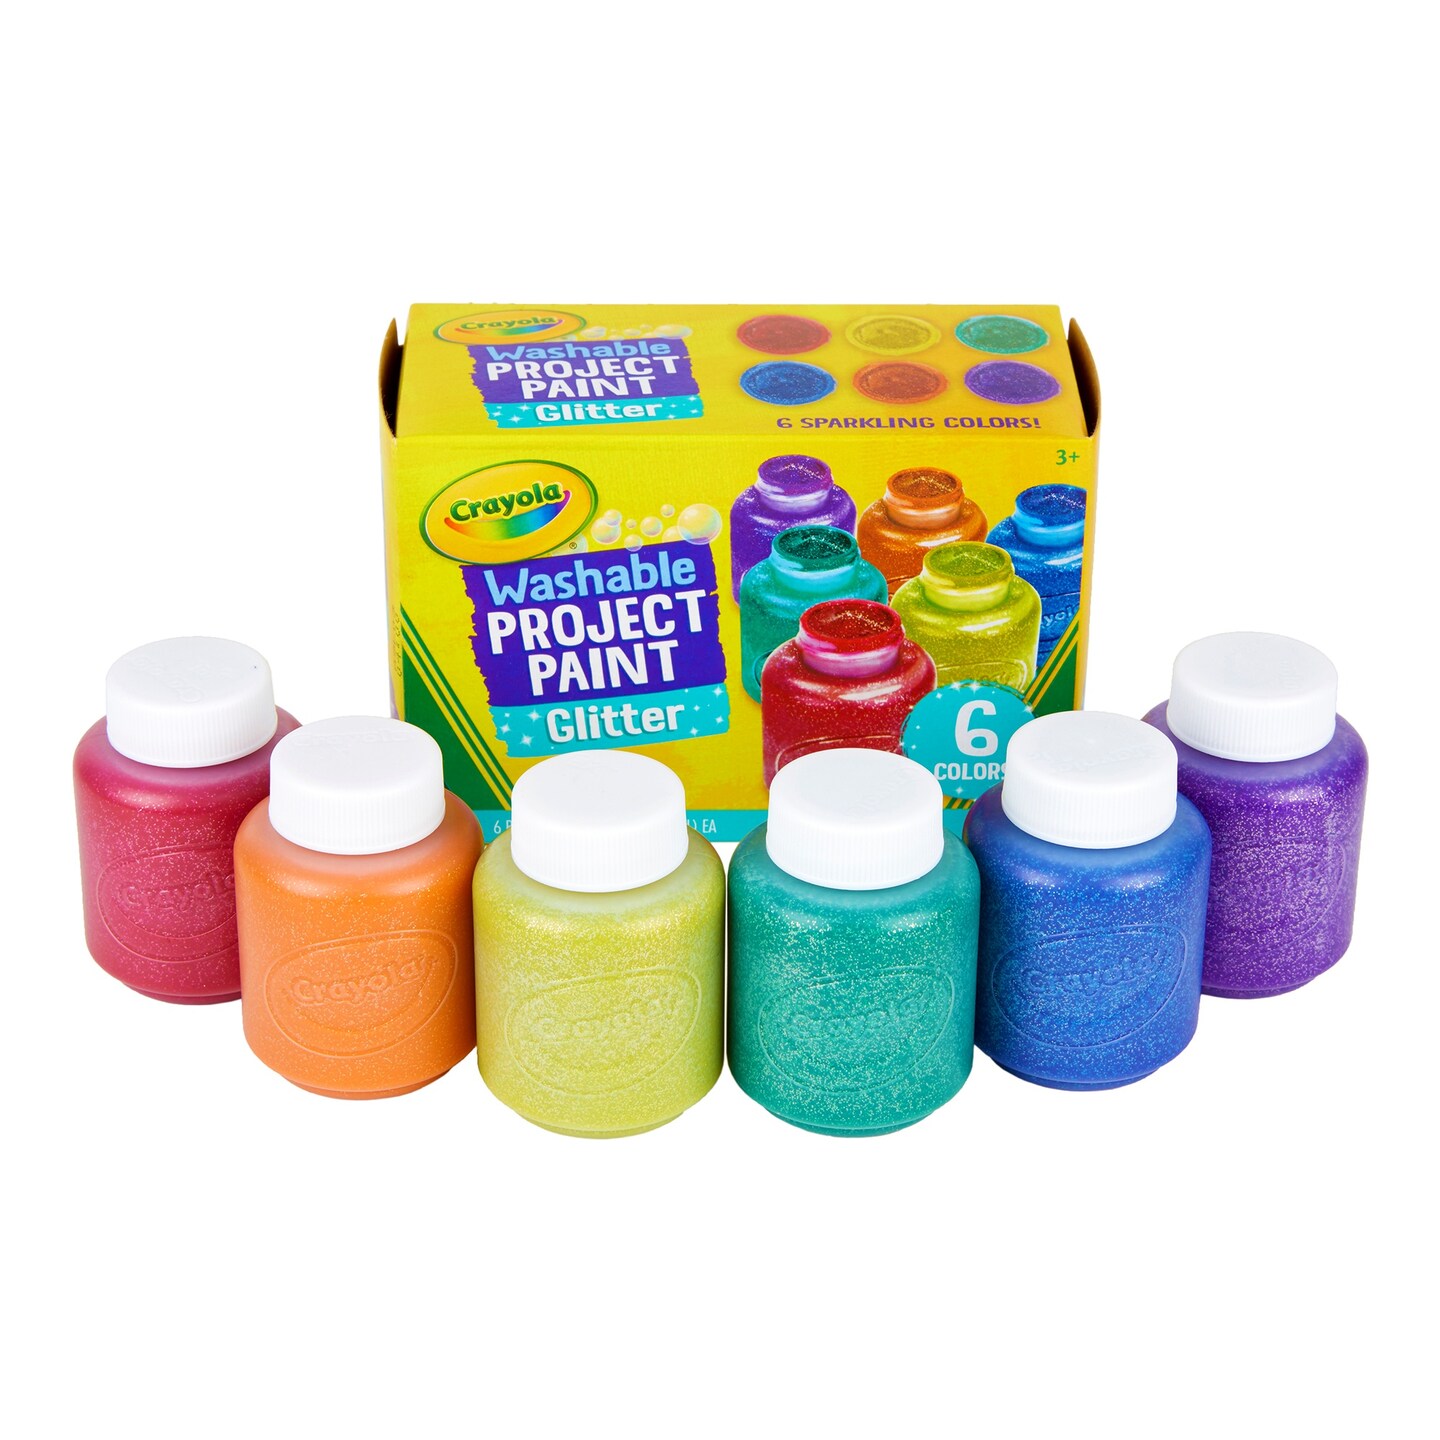 Crayola Washable Kids' Paint Complete Set Washable Set 